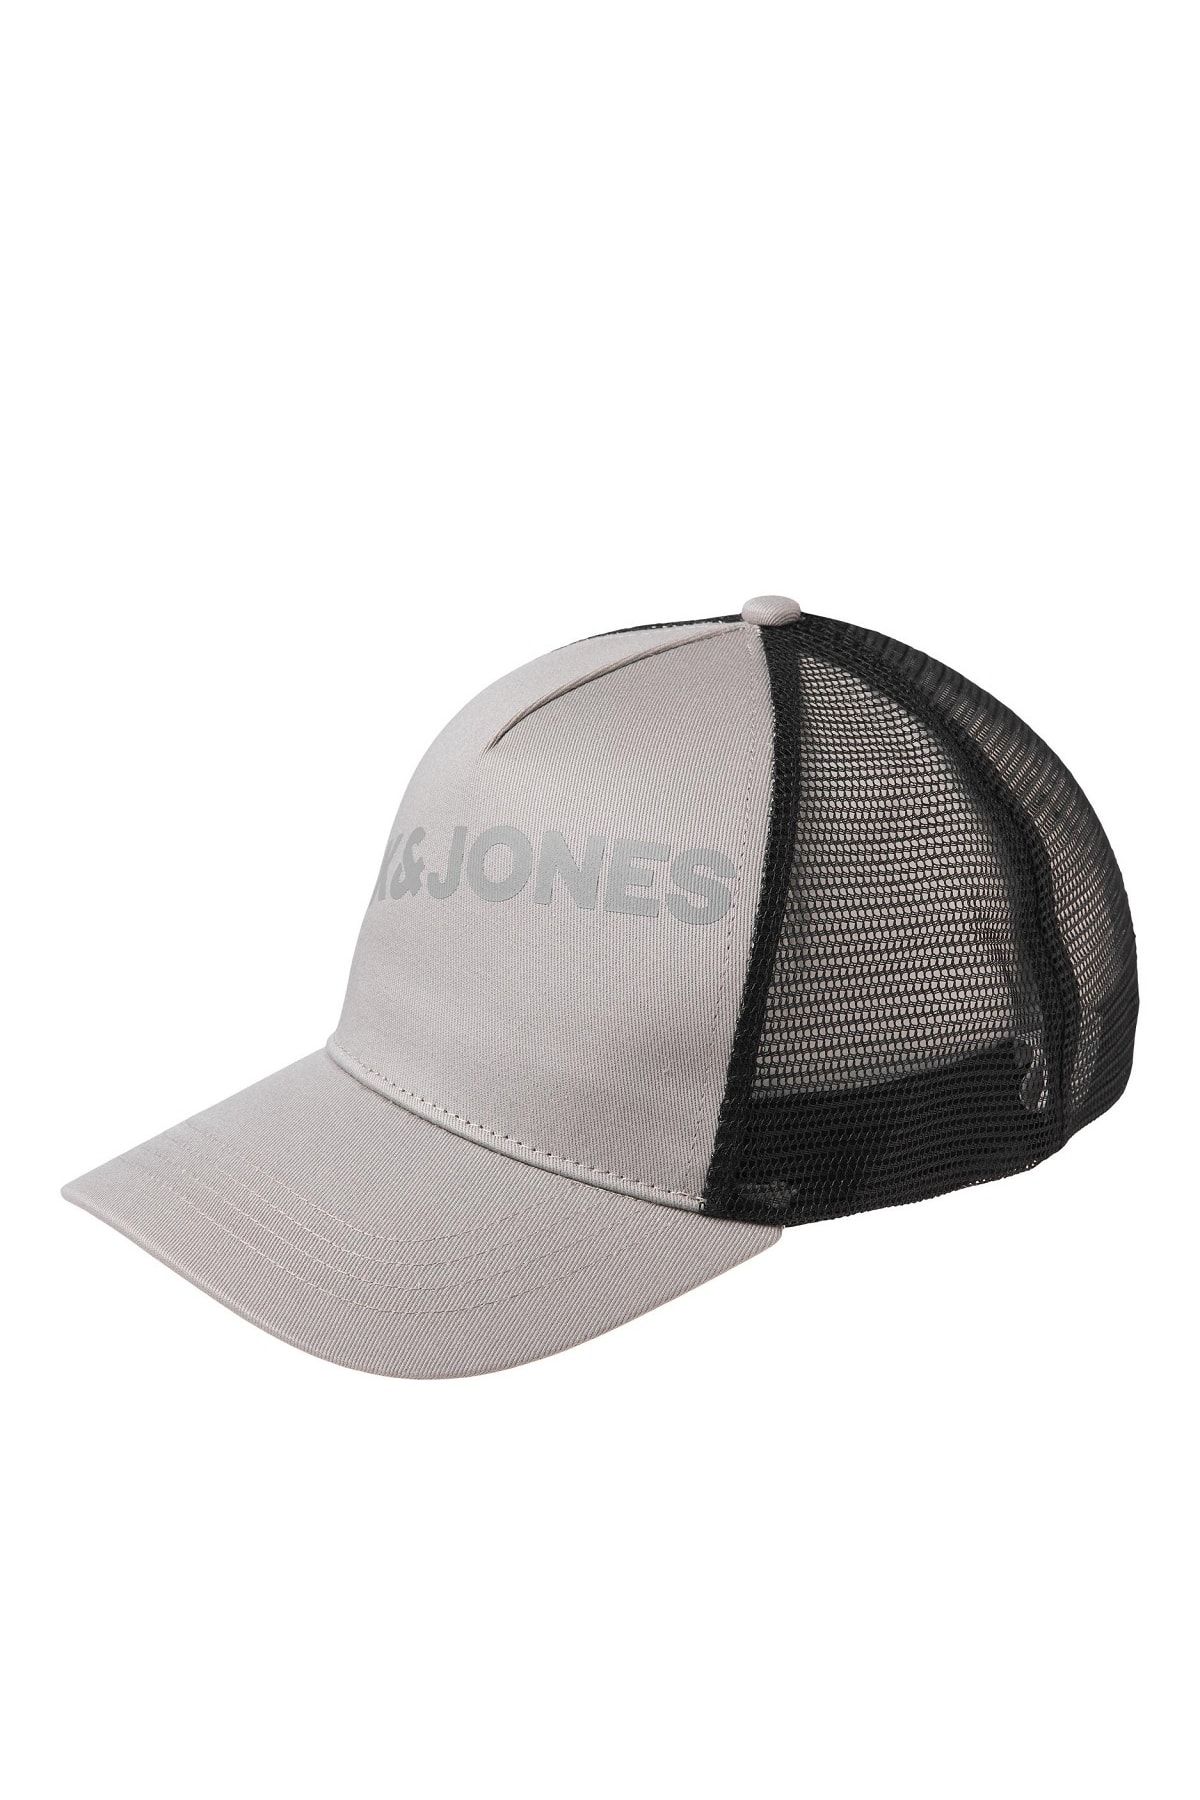 Jack & Jones Jack Jones Yazılı Erkek Fileli Ayarlanabilir Şapka 12228973